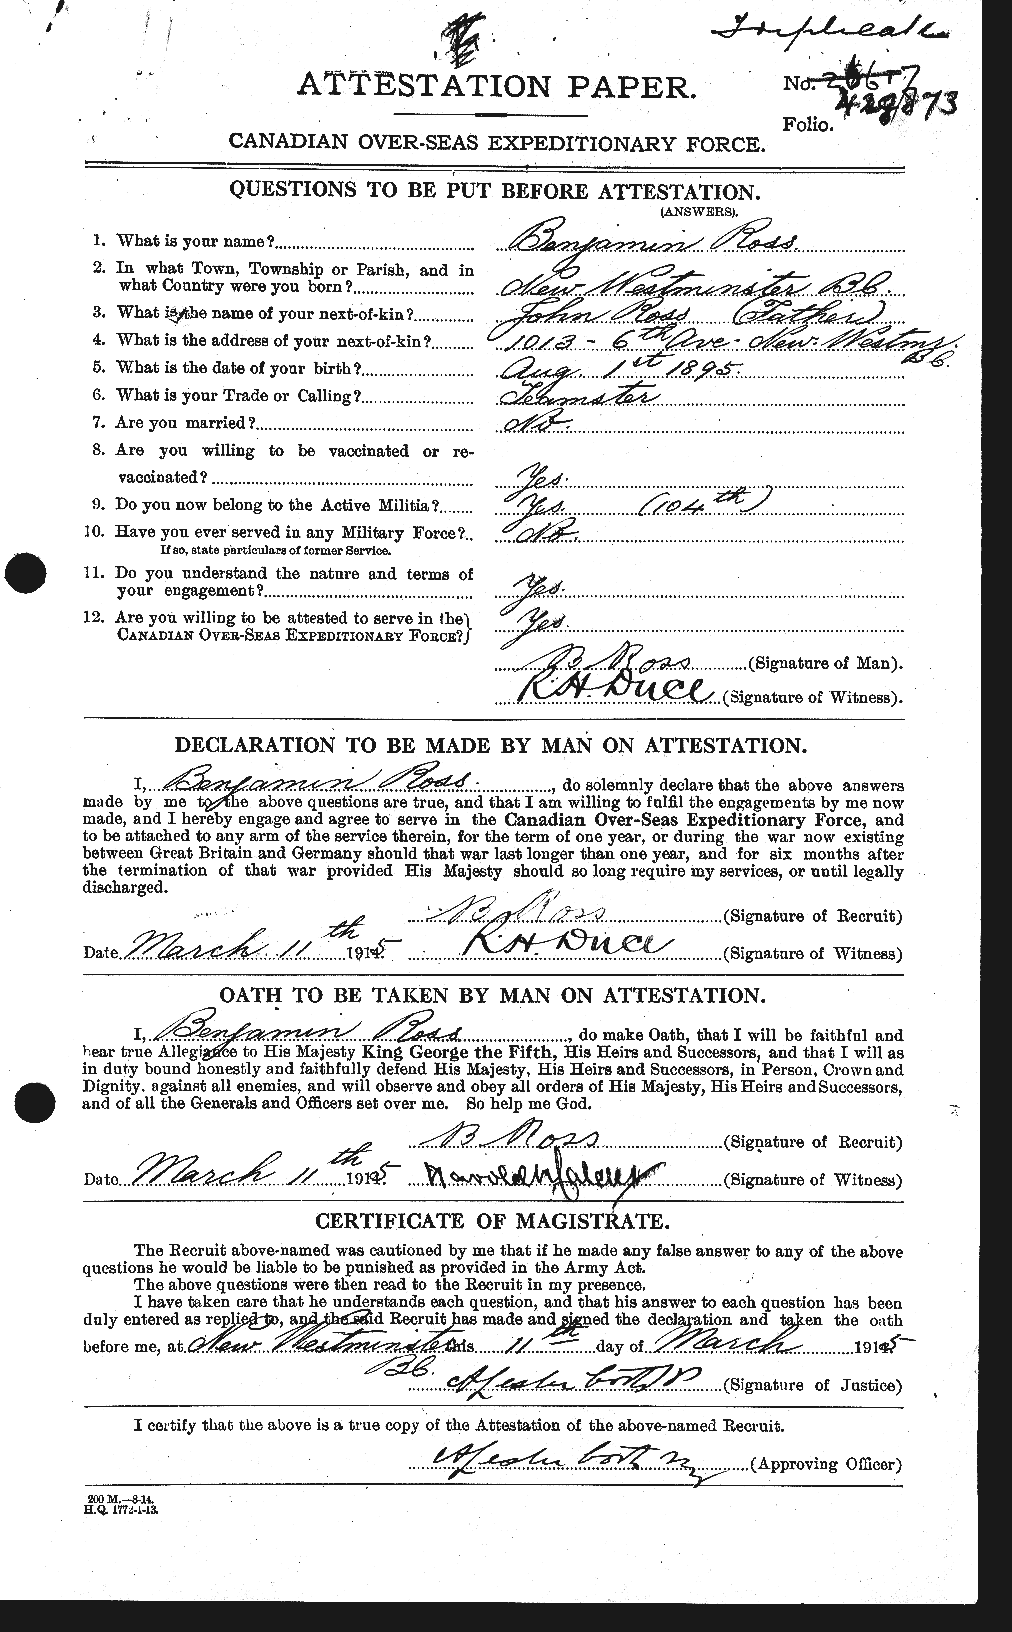 Dossiers du Personnel de la Première Guerre mondiale - CEC 612713a